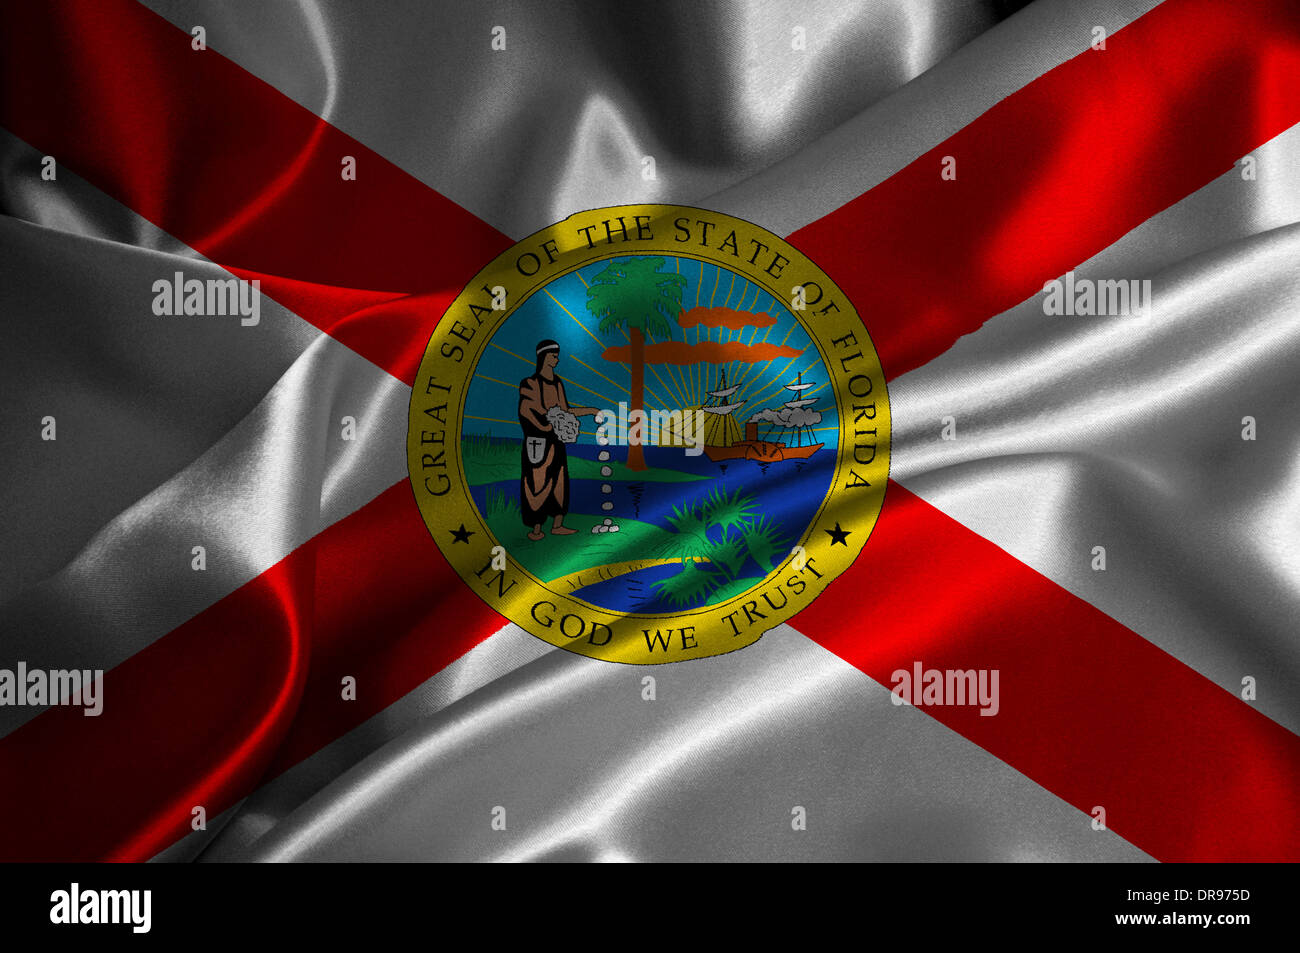 Florida flag on satin texture. Stock Photo